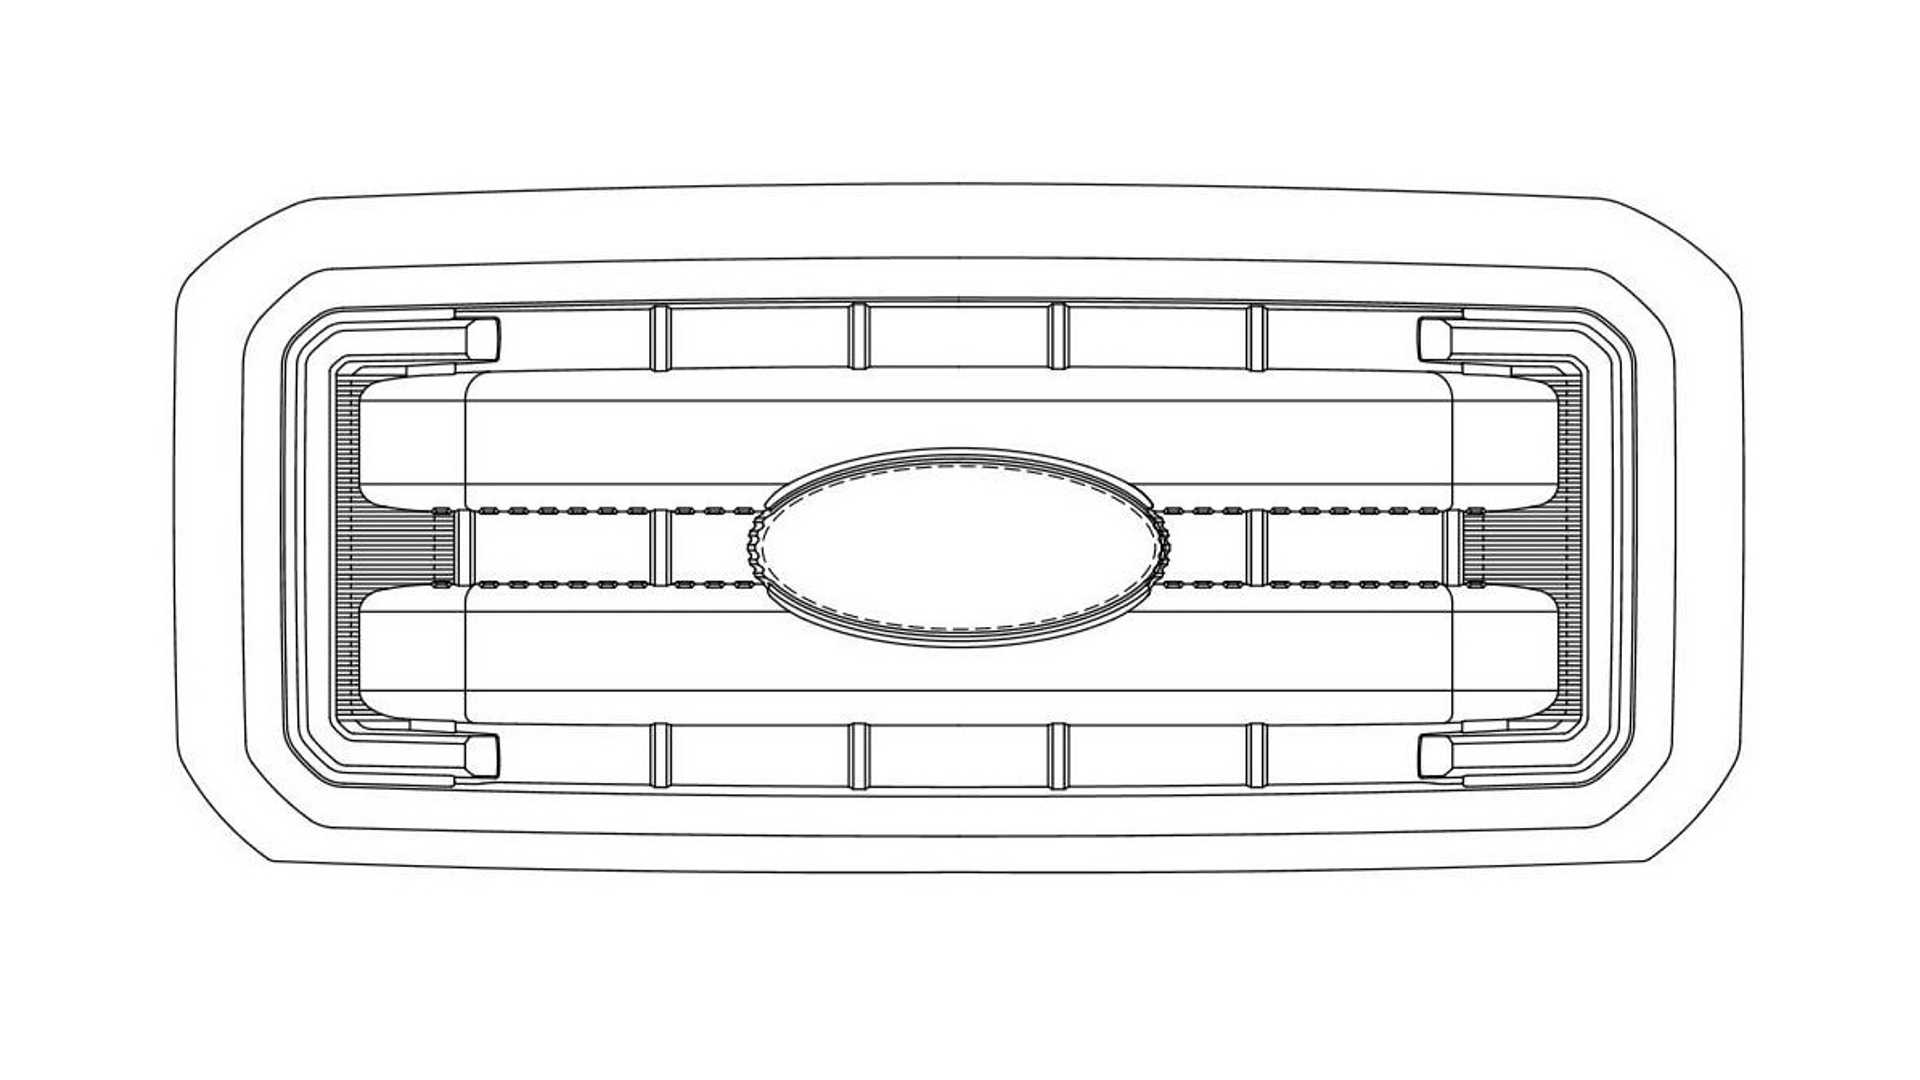 فورد تسجل براءة اختراع لأربع تصاميم جديدة للشبك الأمامي 12